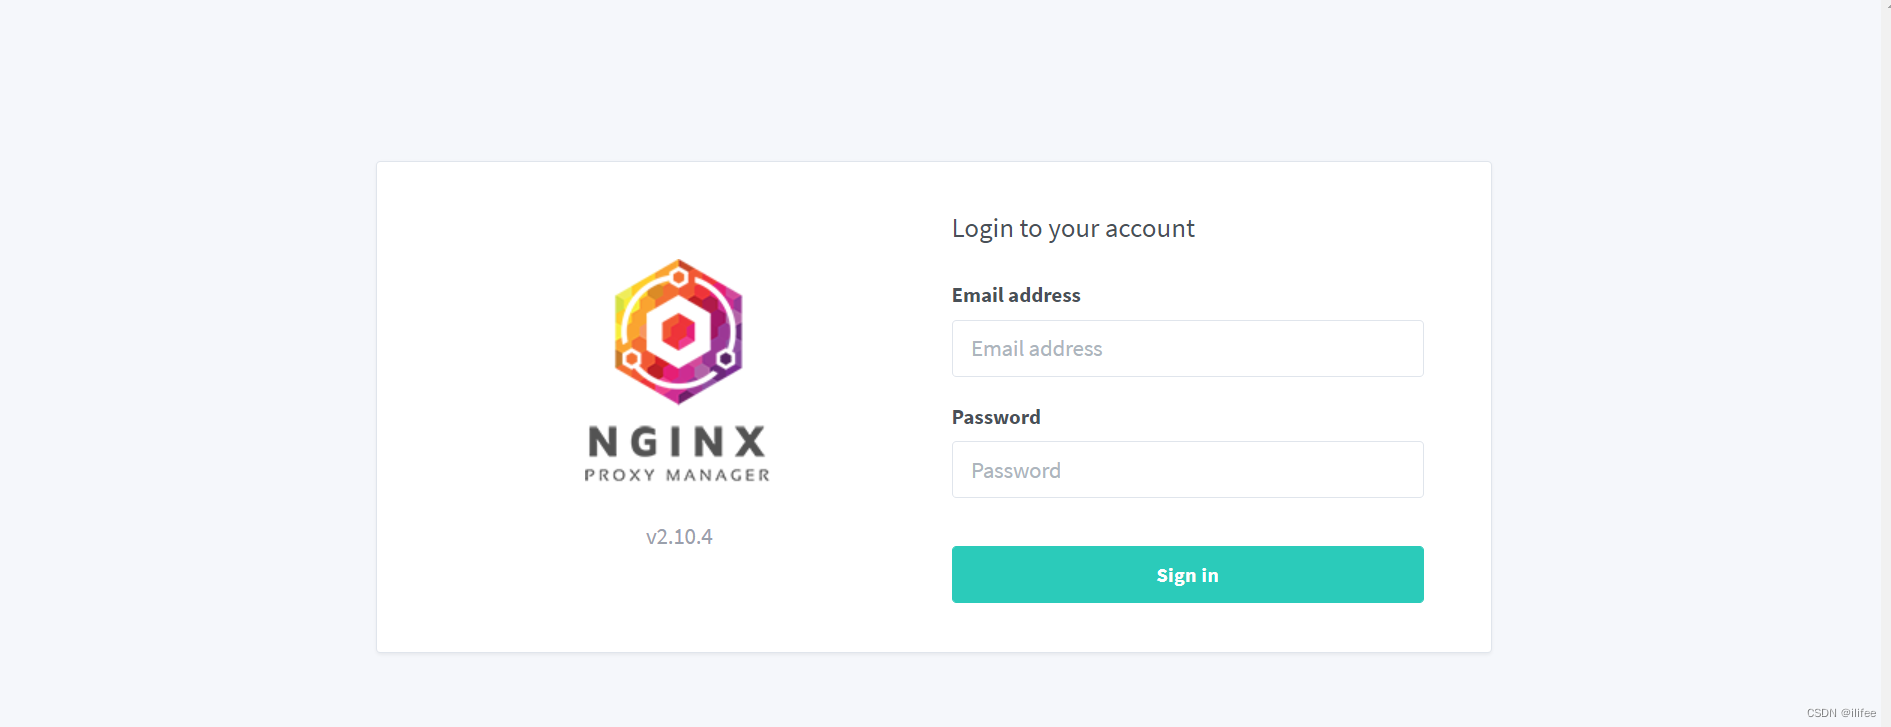 nginx-proxy-manager初次登录502 bad gateway